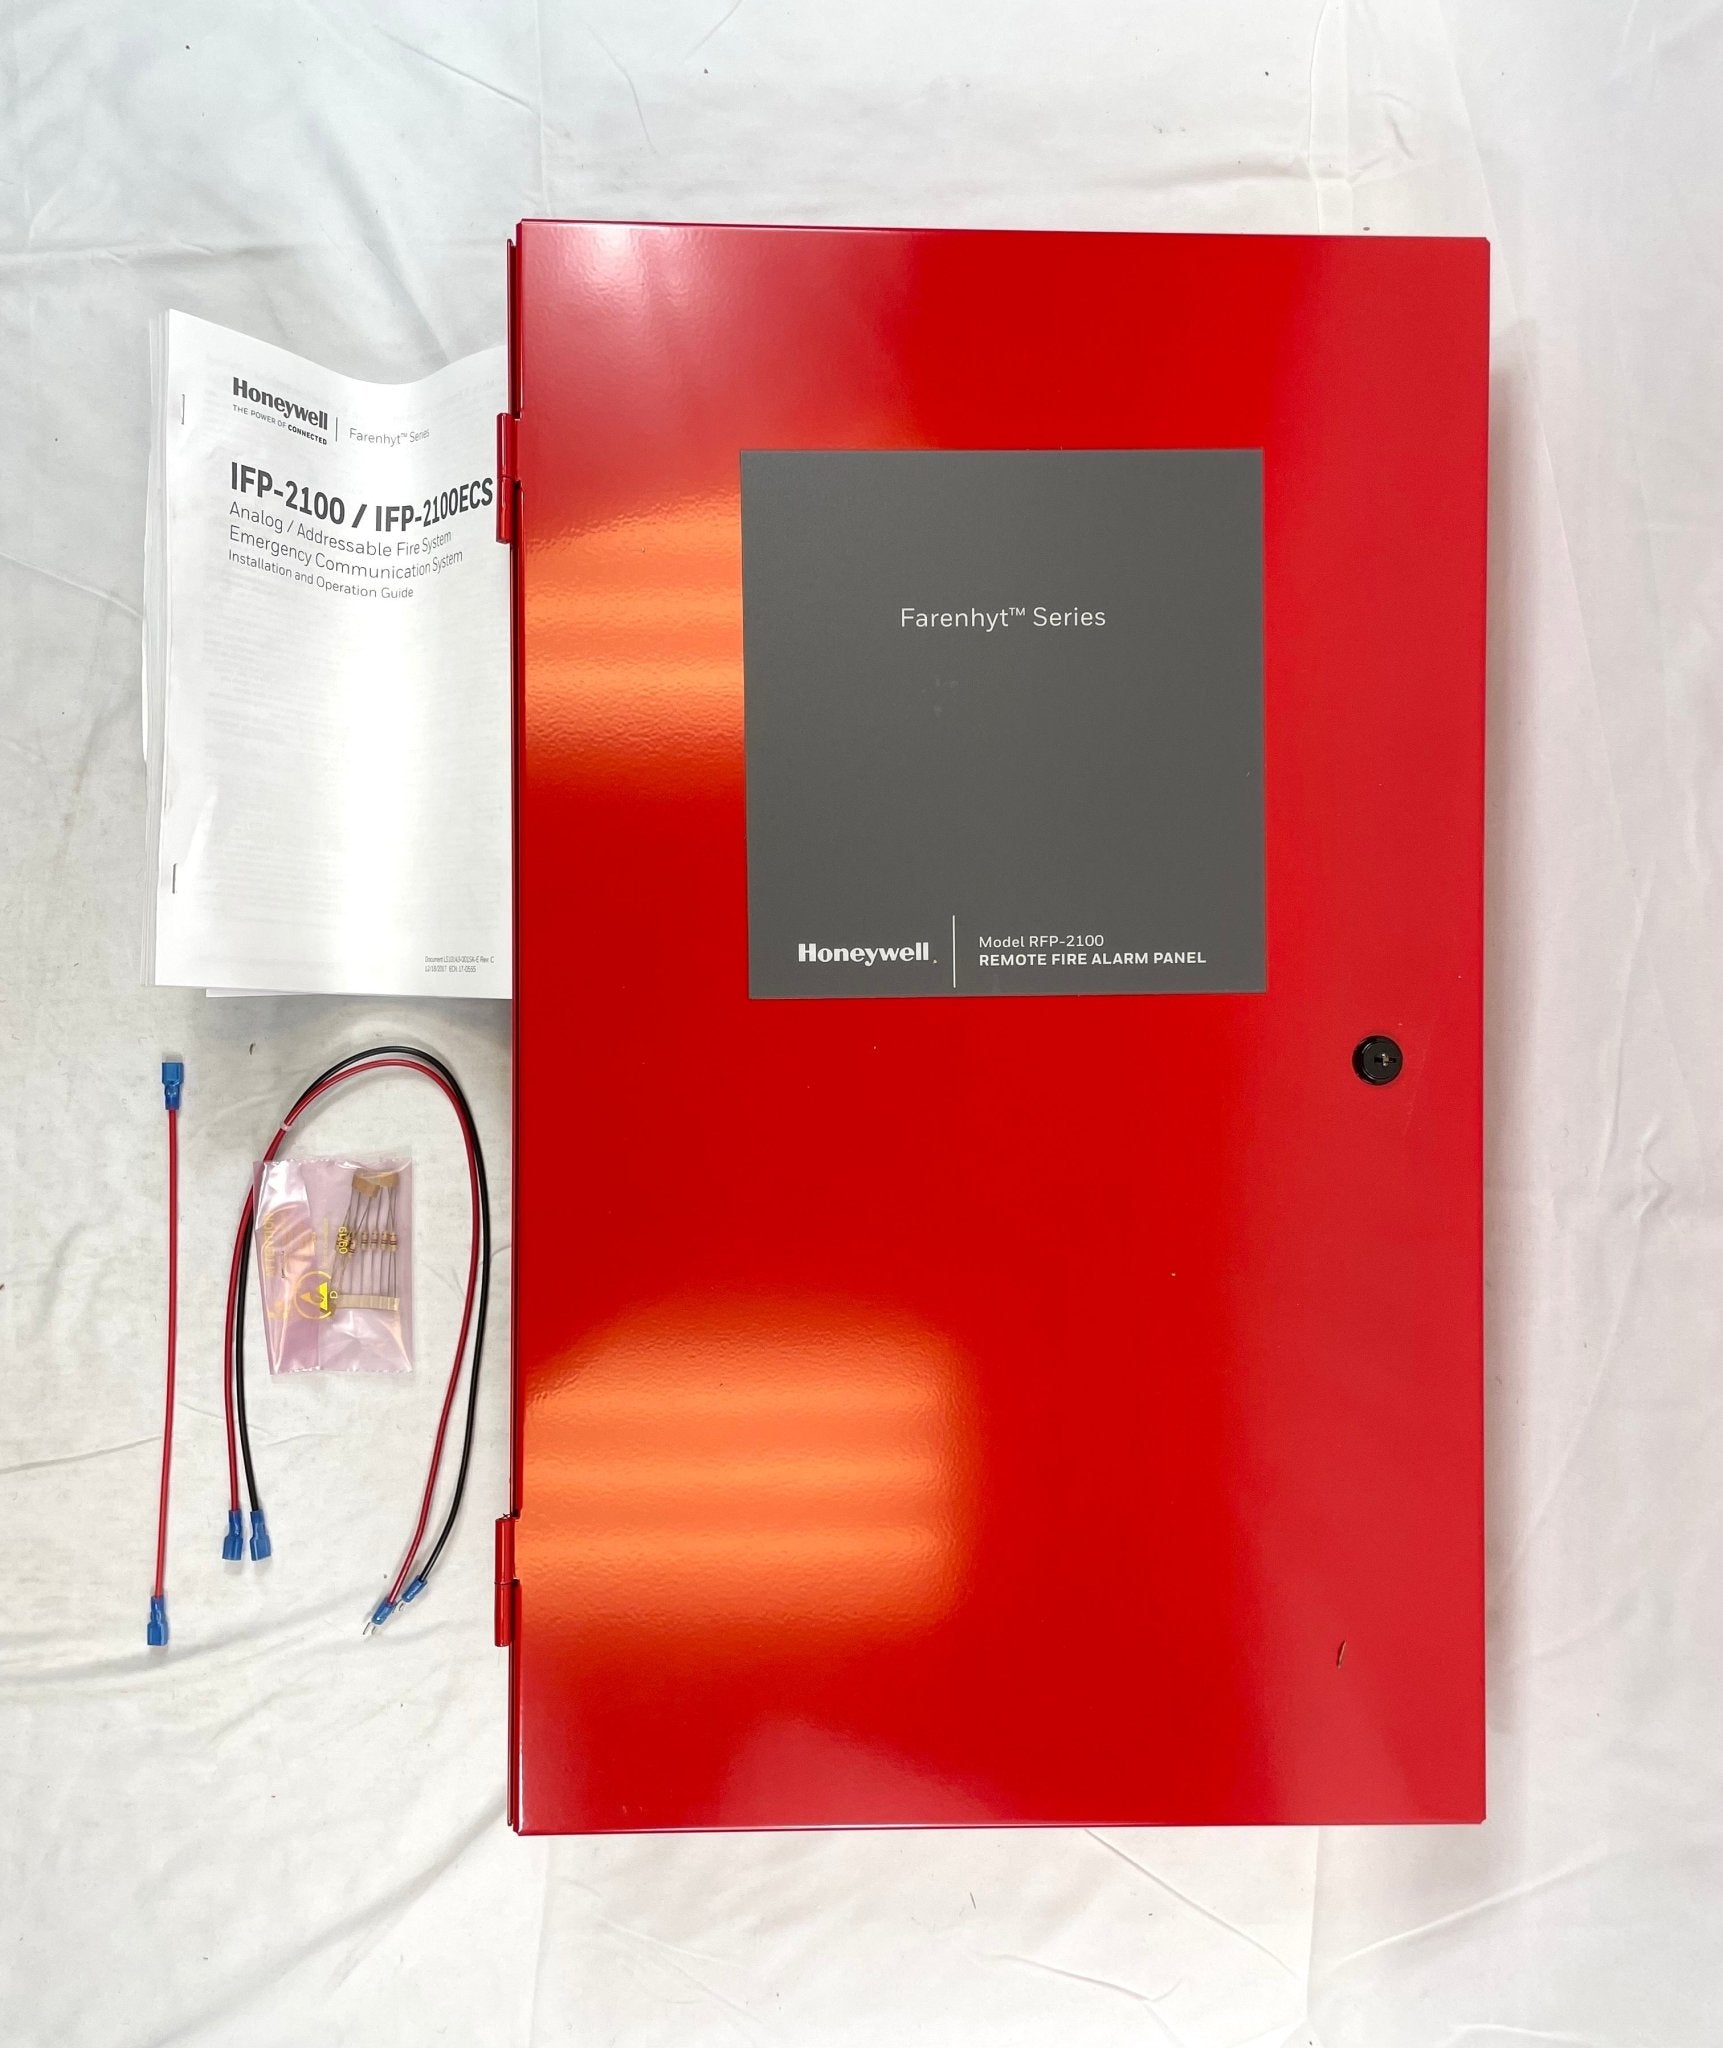 Farenhyt RFP-2100 - The Fire Alarm Supplier